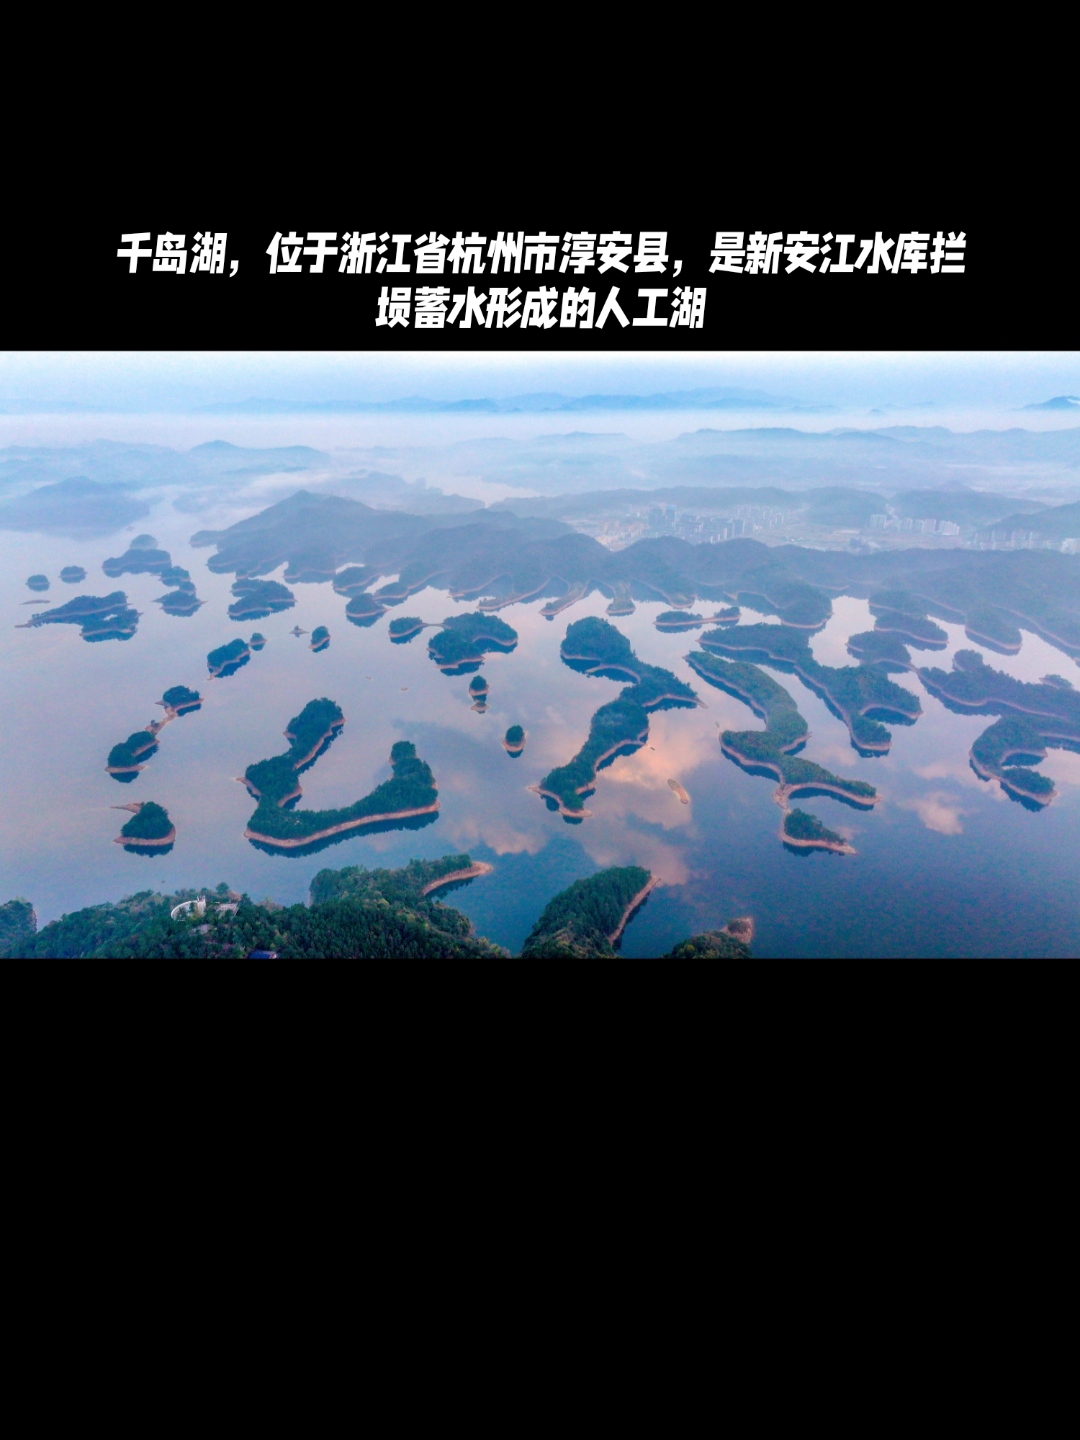 千岛湖,位于浙江省杭州市淳安县,是新安江水库拦坝蓄水形成的人工湖